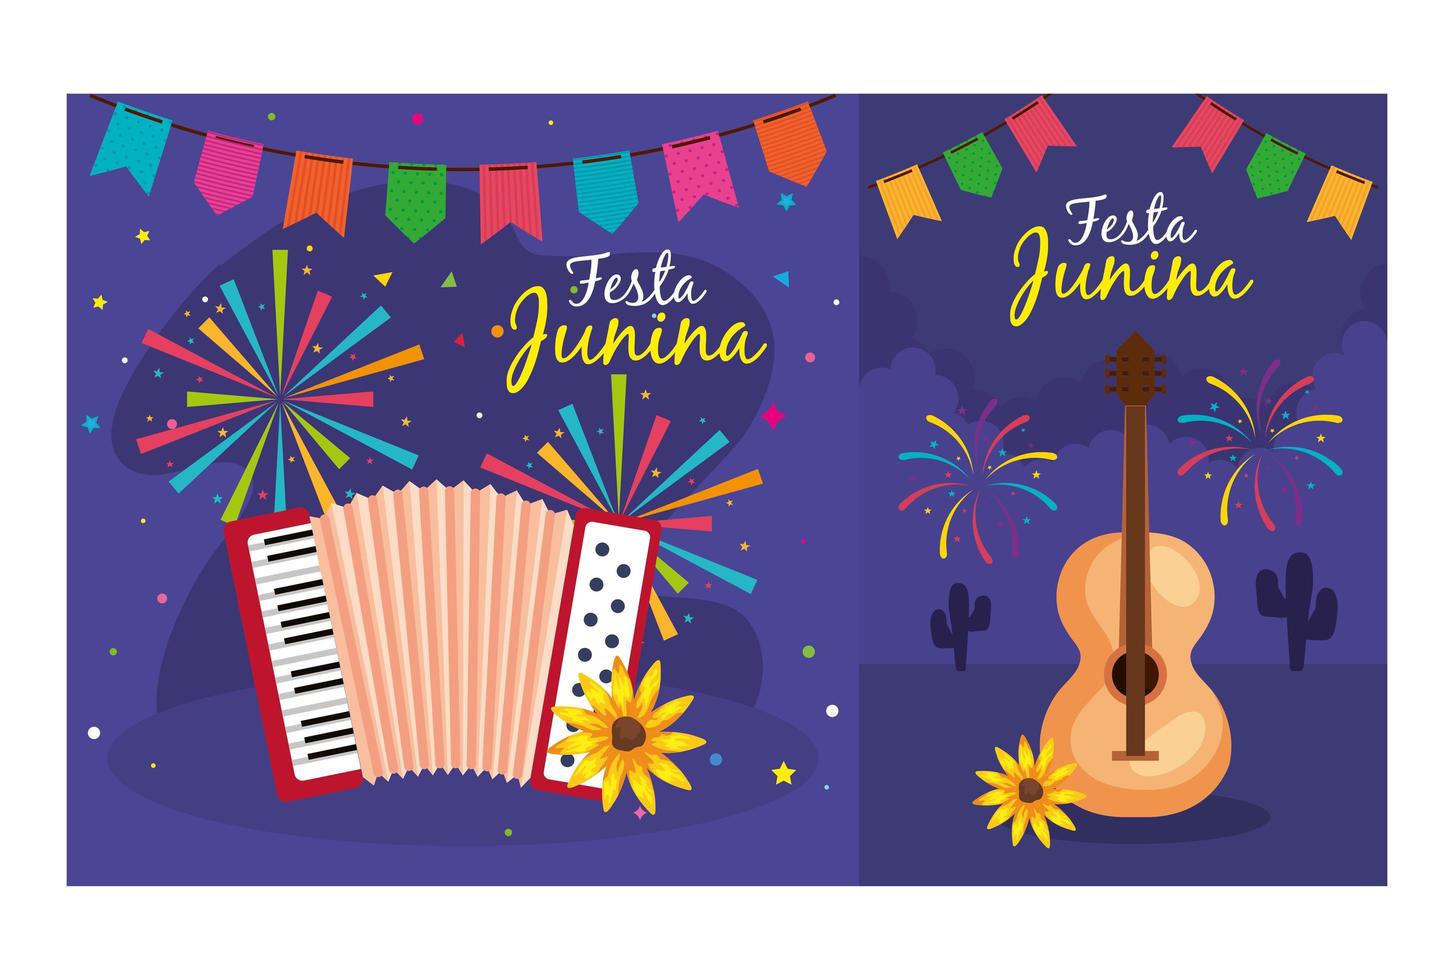 festa junina set kaarten, brazilië juni festival met decoratie vector